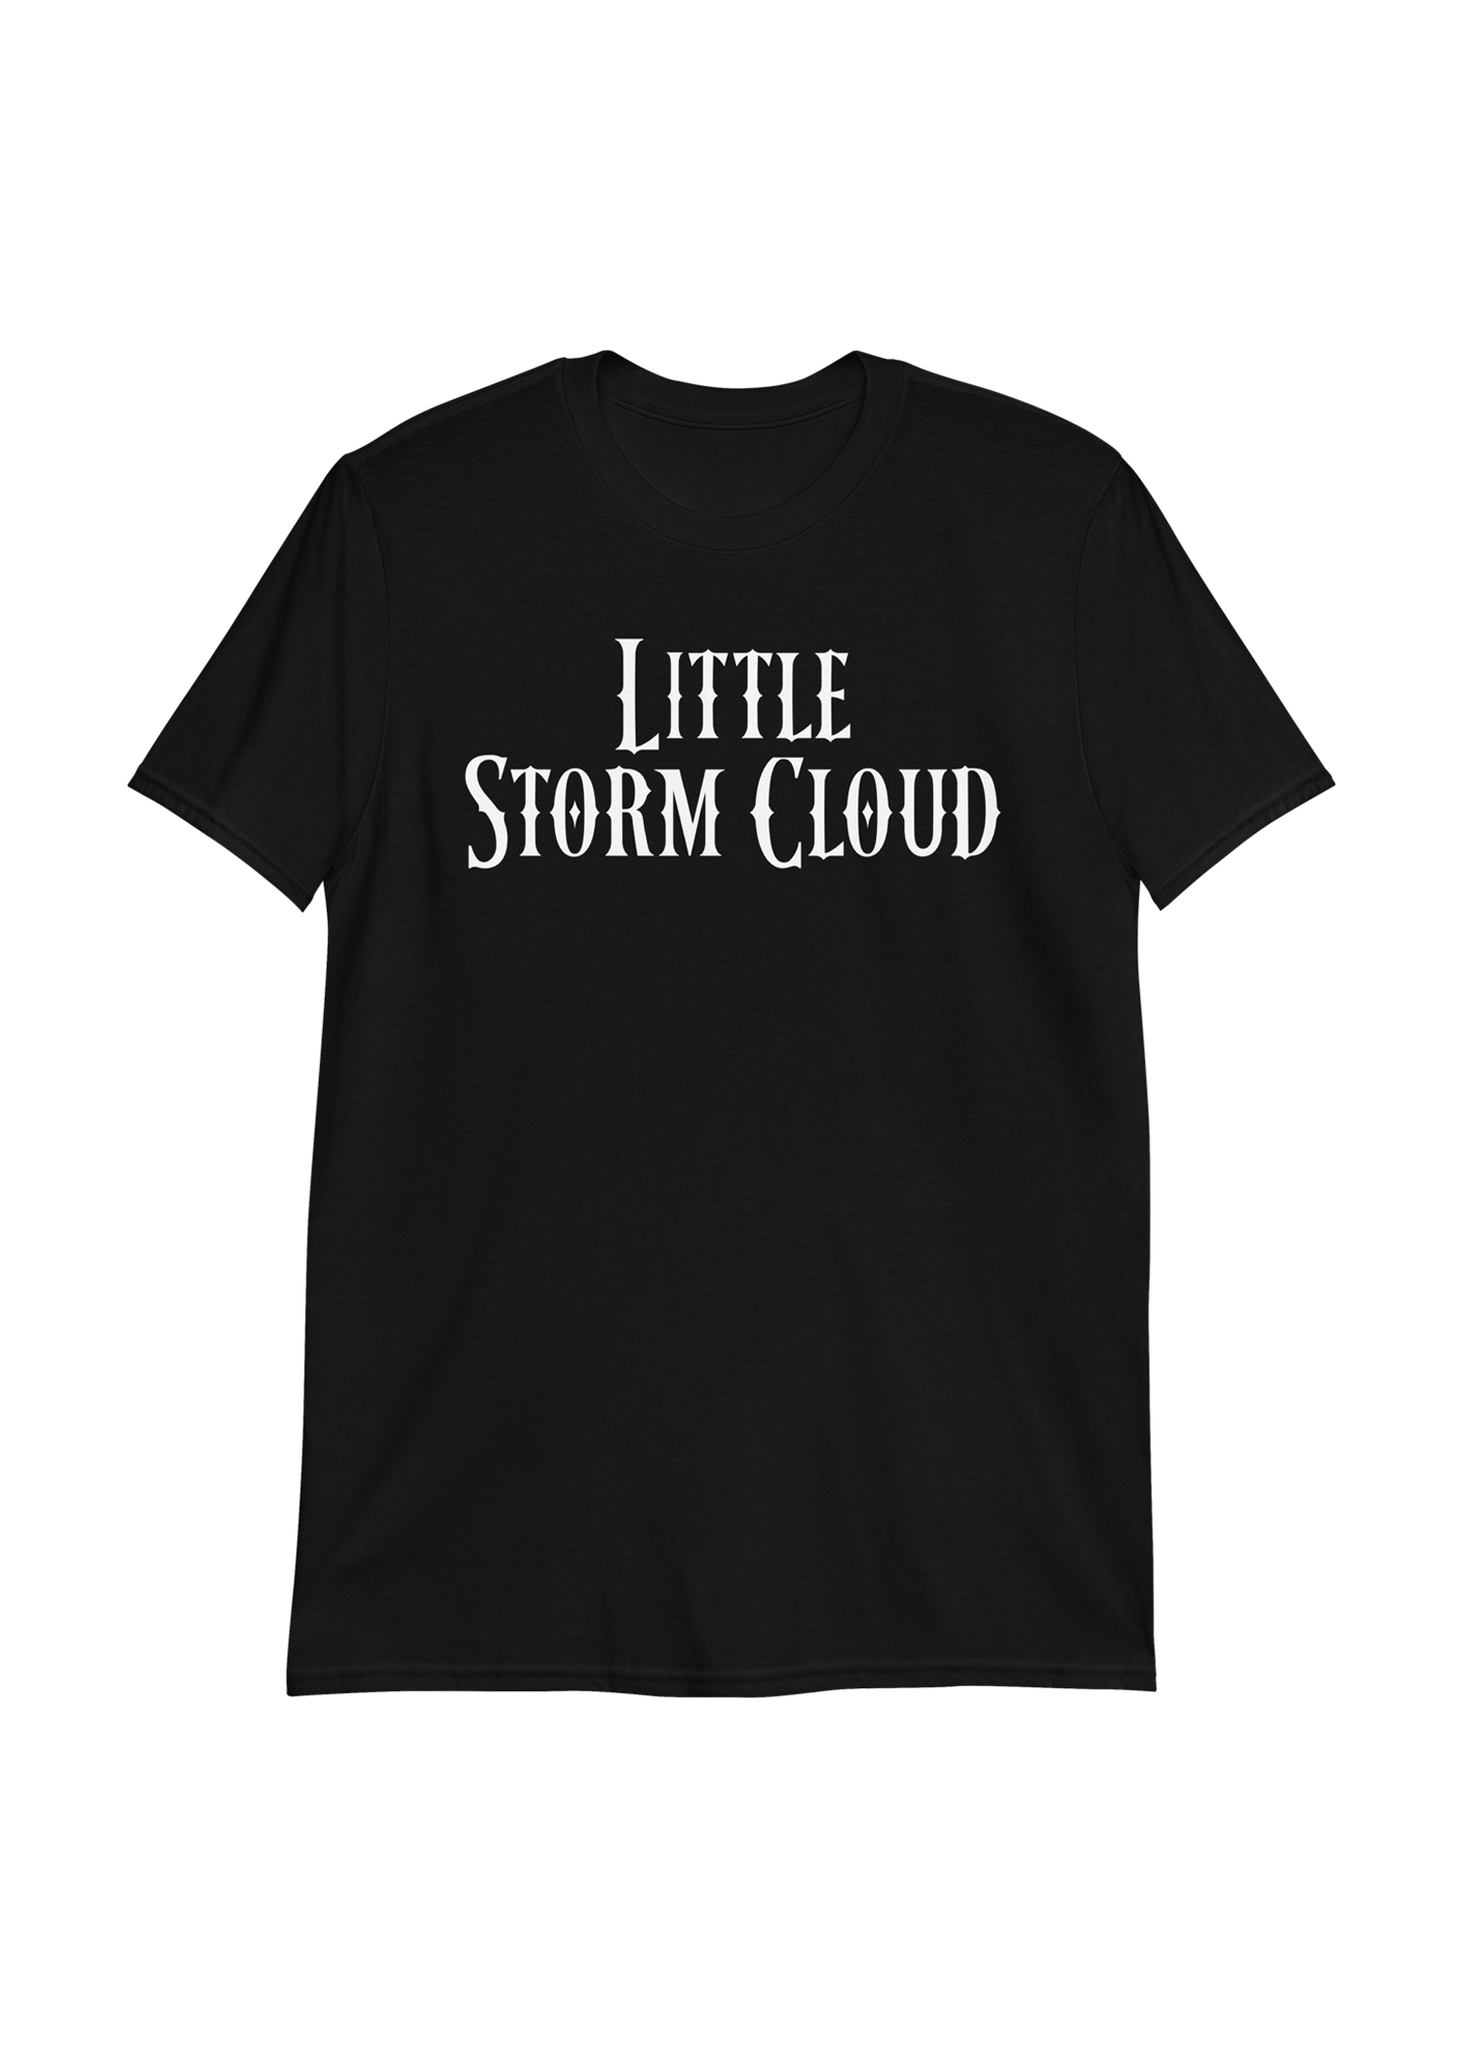 Little Storm Cloud Unisex Black T-Shirt